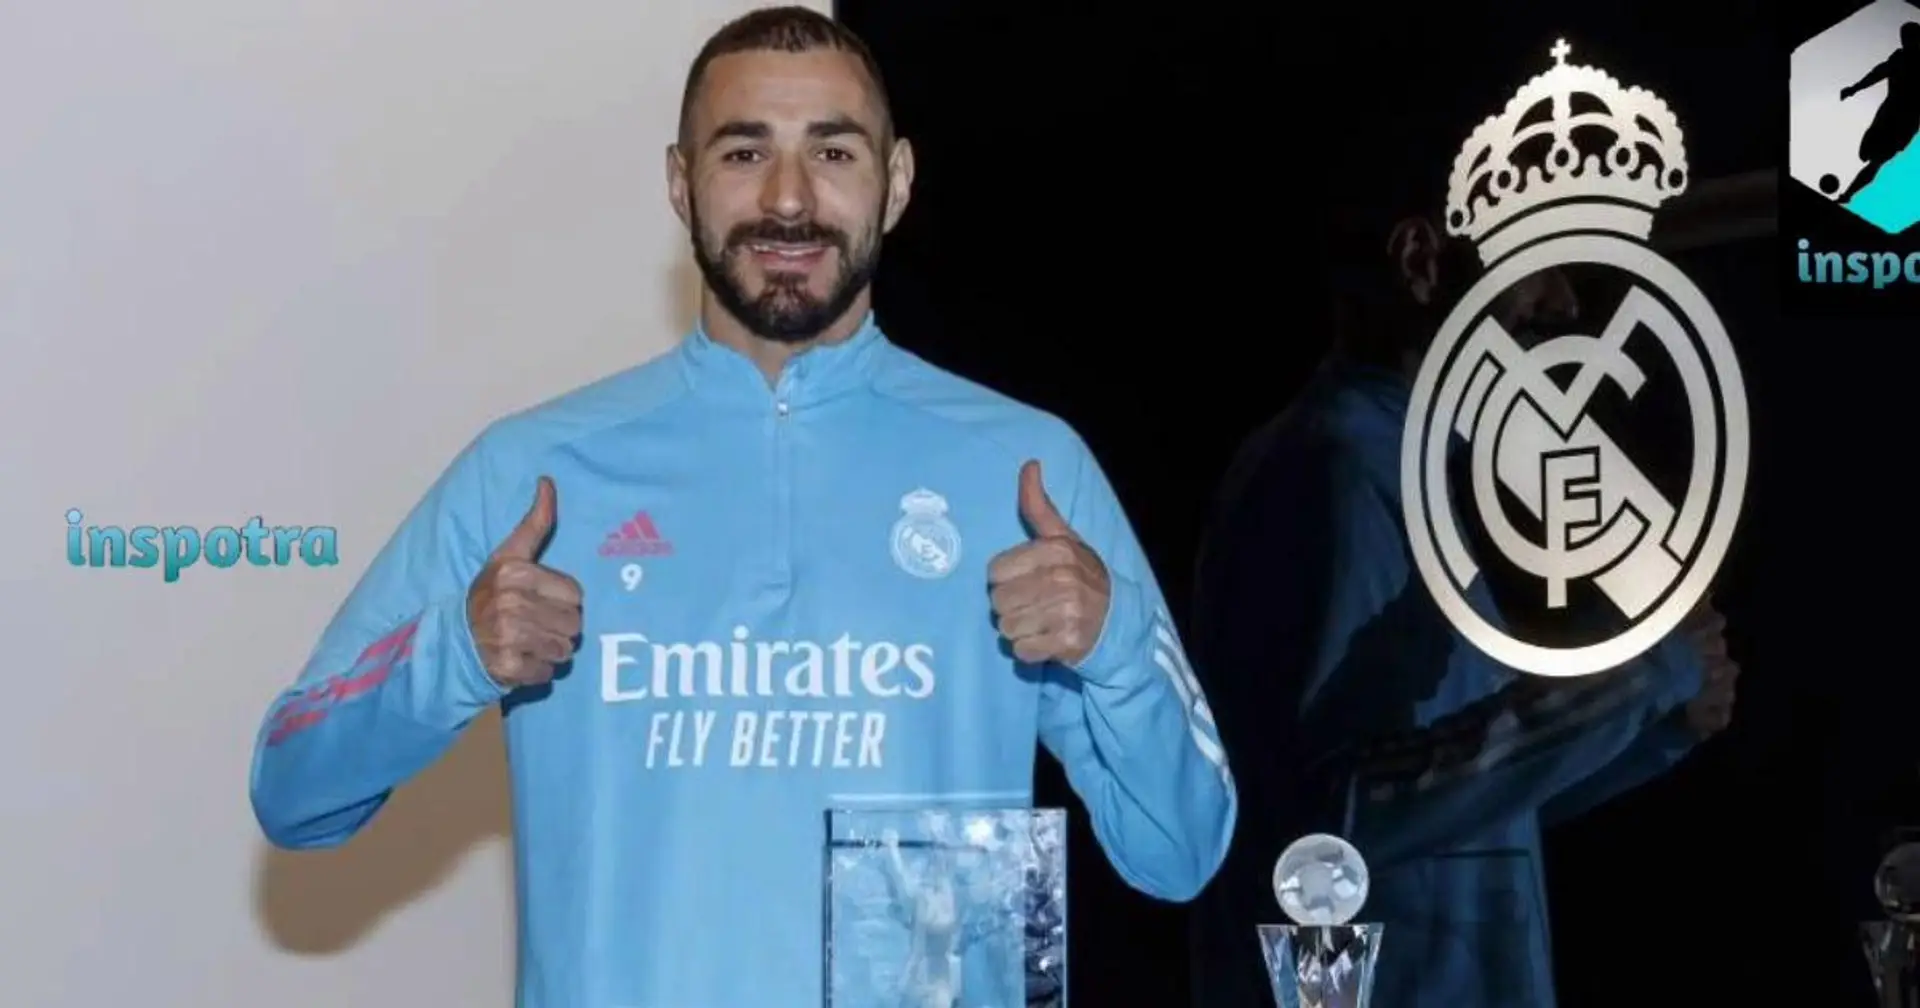 "Une récompense pour mon travail dans ce club depuis 2009'': Benzema a remporté le prix du meilleur joueur de Liga 2019/20